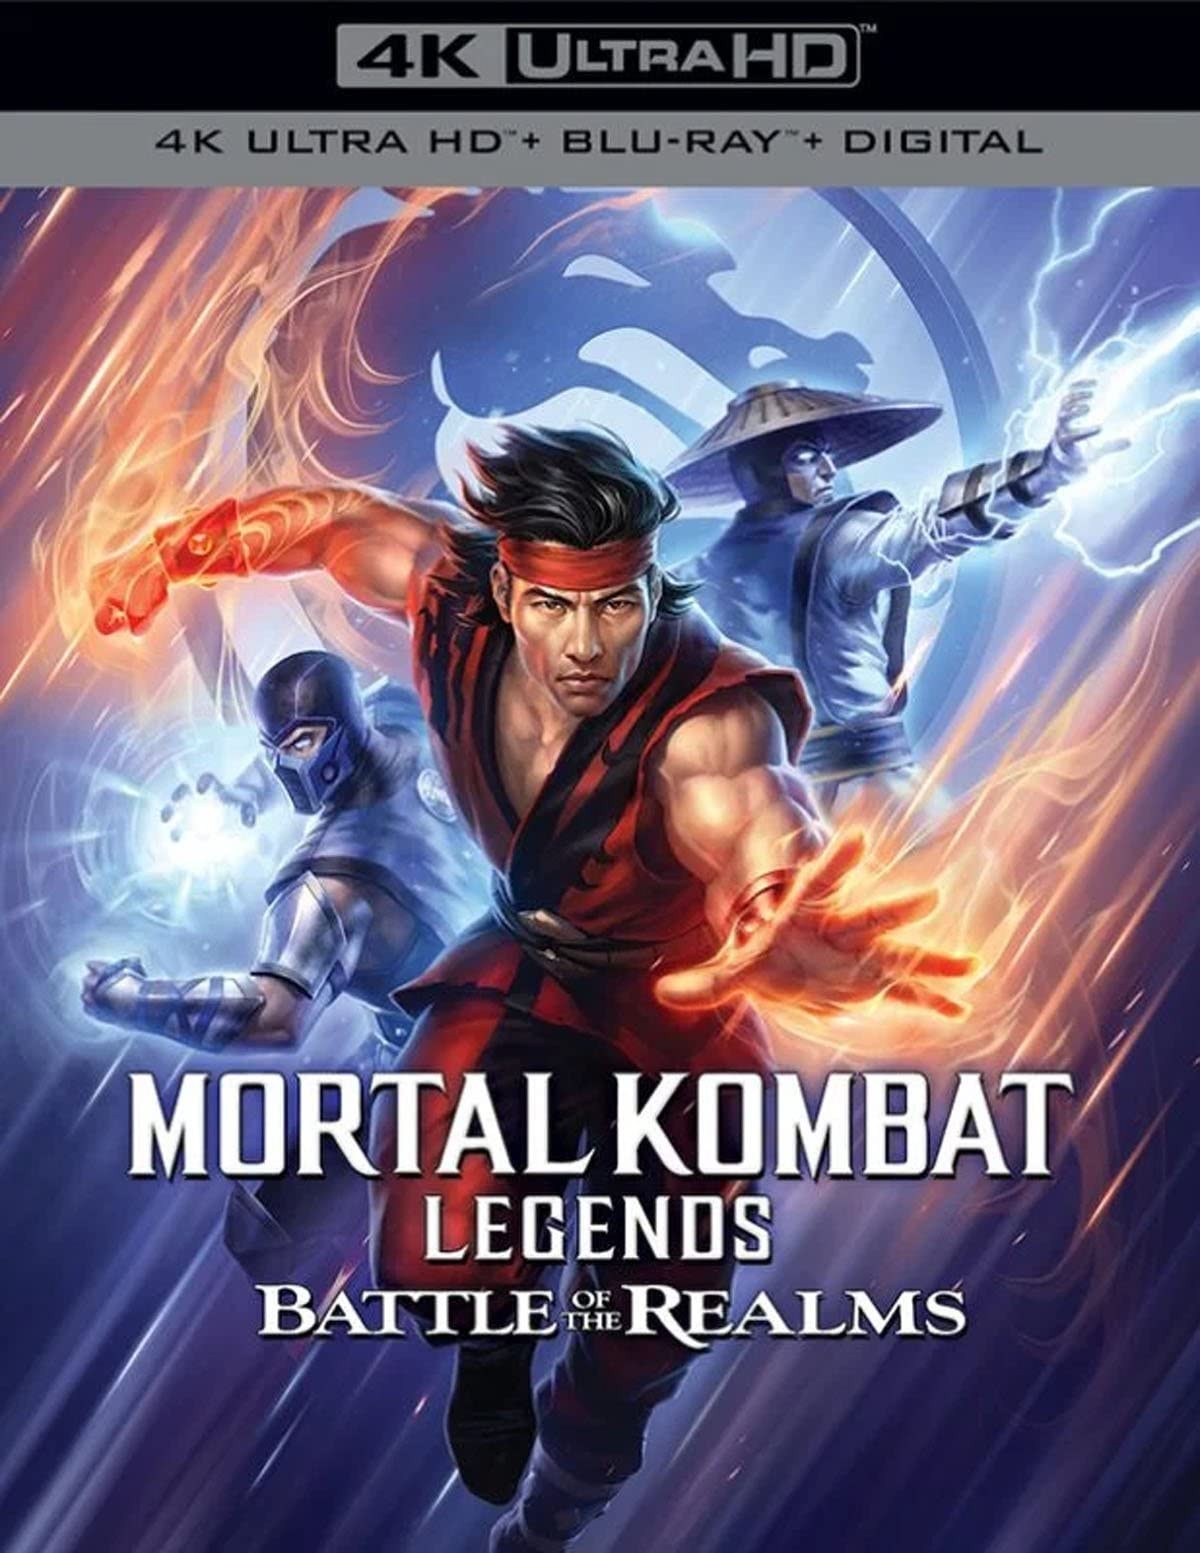 Легенды "Смертельной битвы": Битва королевств / Mortal Kombat Legends: Battle of the Realms (2021) отзывы. Рецензии. Новости кино. Актеры фильма Легенды "Смертельной битвы": Битва королевств. Отзывы о фильме Легенды "Смертельной битвы": Битва королевств